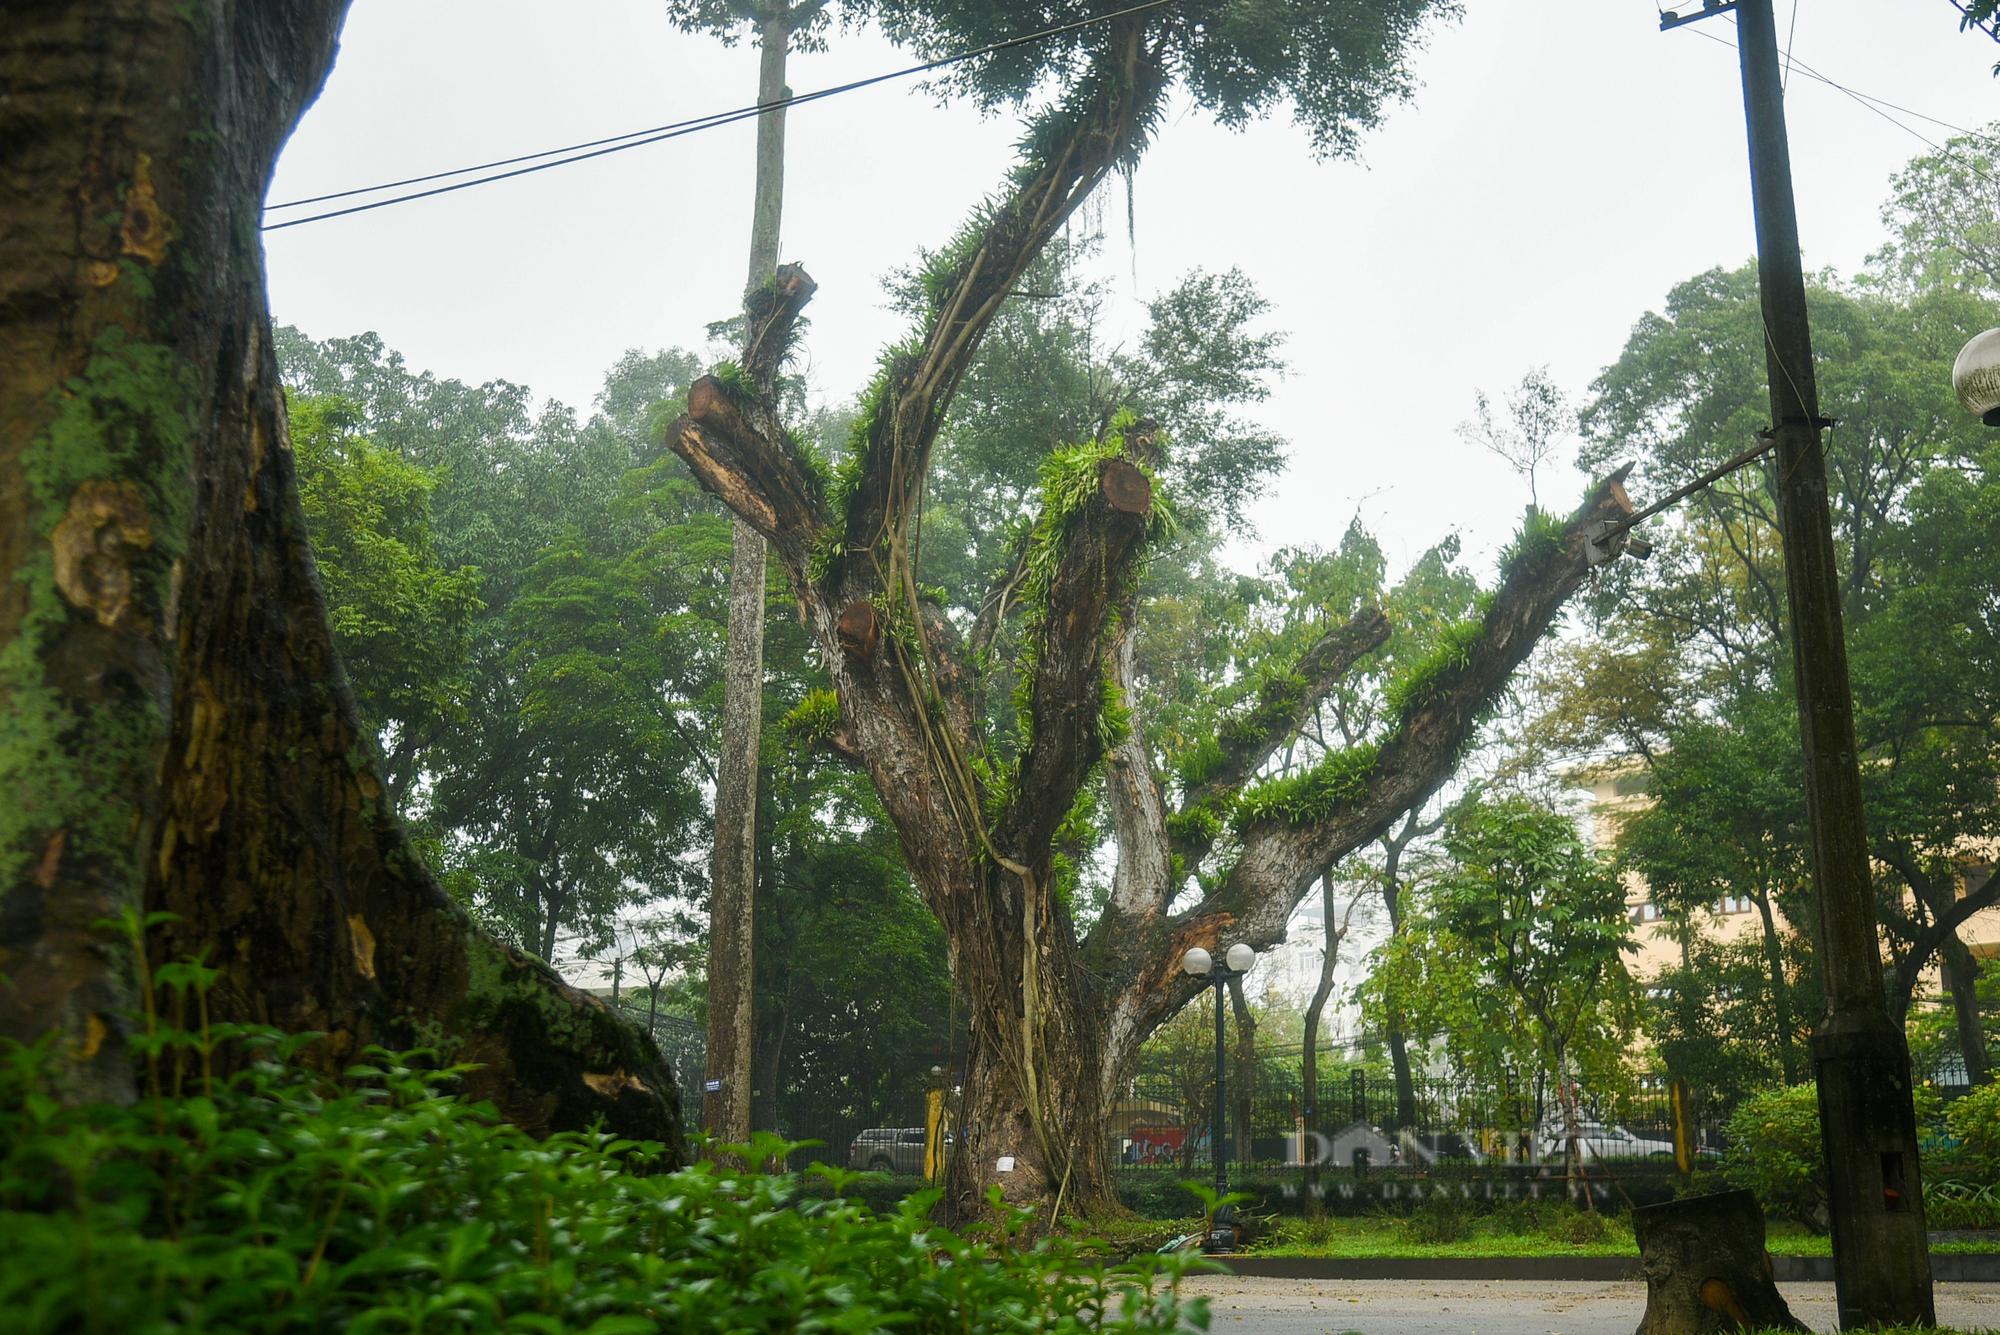 Nhiều cây cổ thụ hơn 100 tuổi chết khô ở công viên Bách Thảo Hà Nội - Ảnh 5.